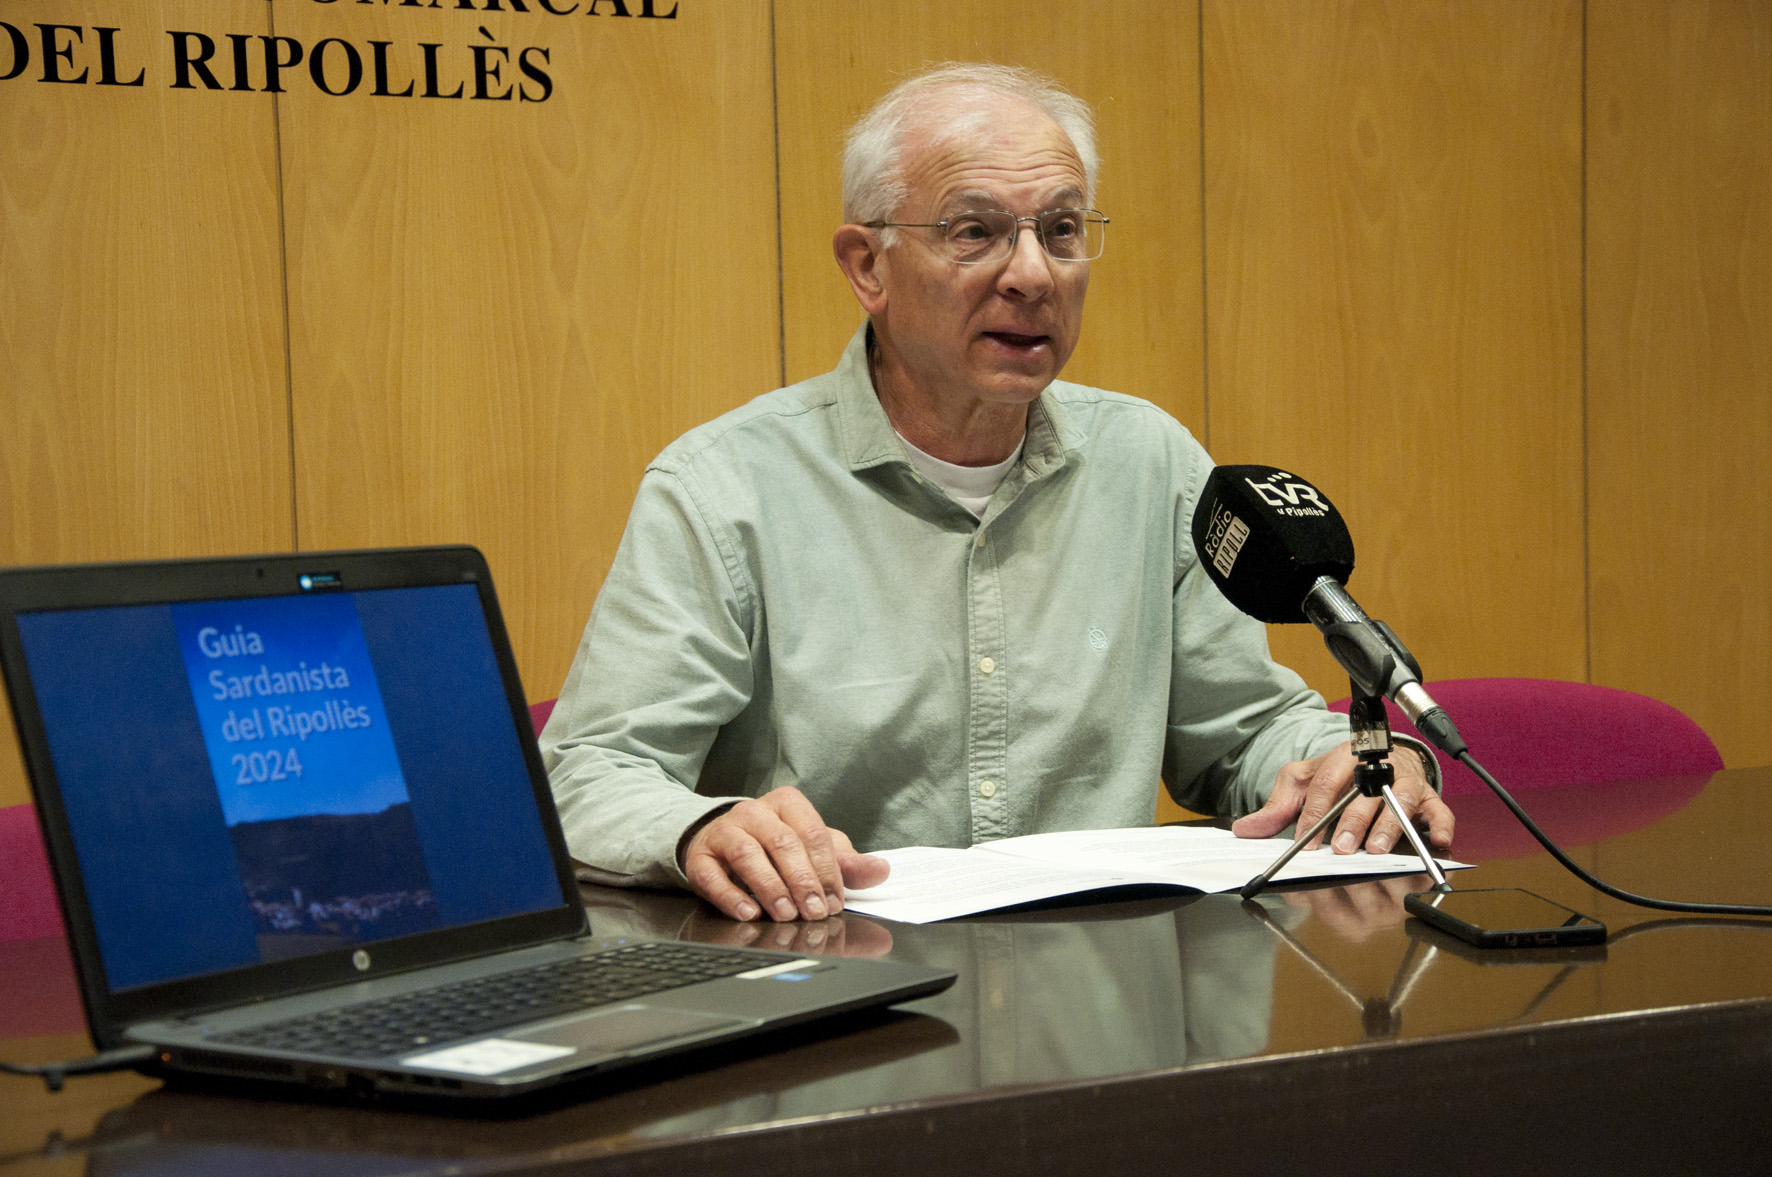 Amadeu Rosell, a la sala de plens, presentant la Guia sardanista del Ripollès 2024, que es mostra en un ordinador a la seva dreta.